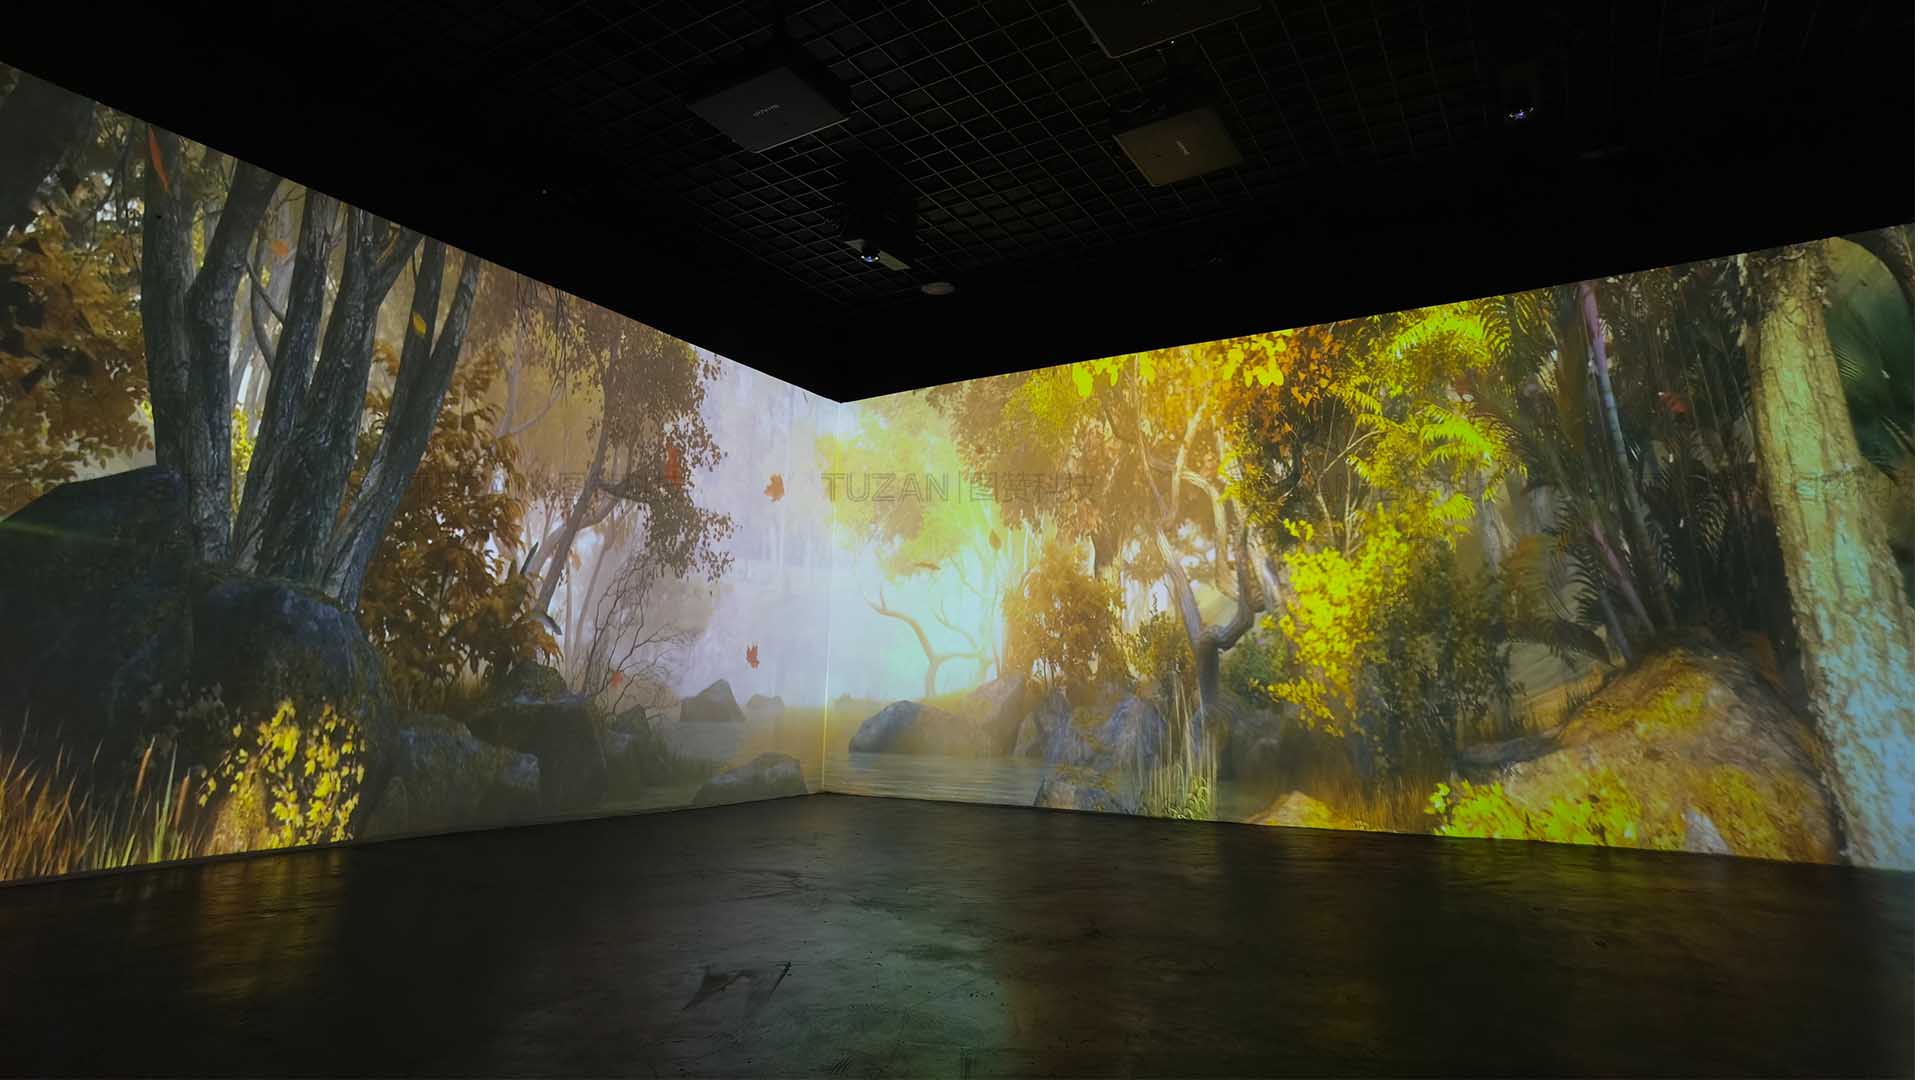 多媒体展厅高端互动体验—沉浸式空间